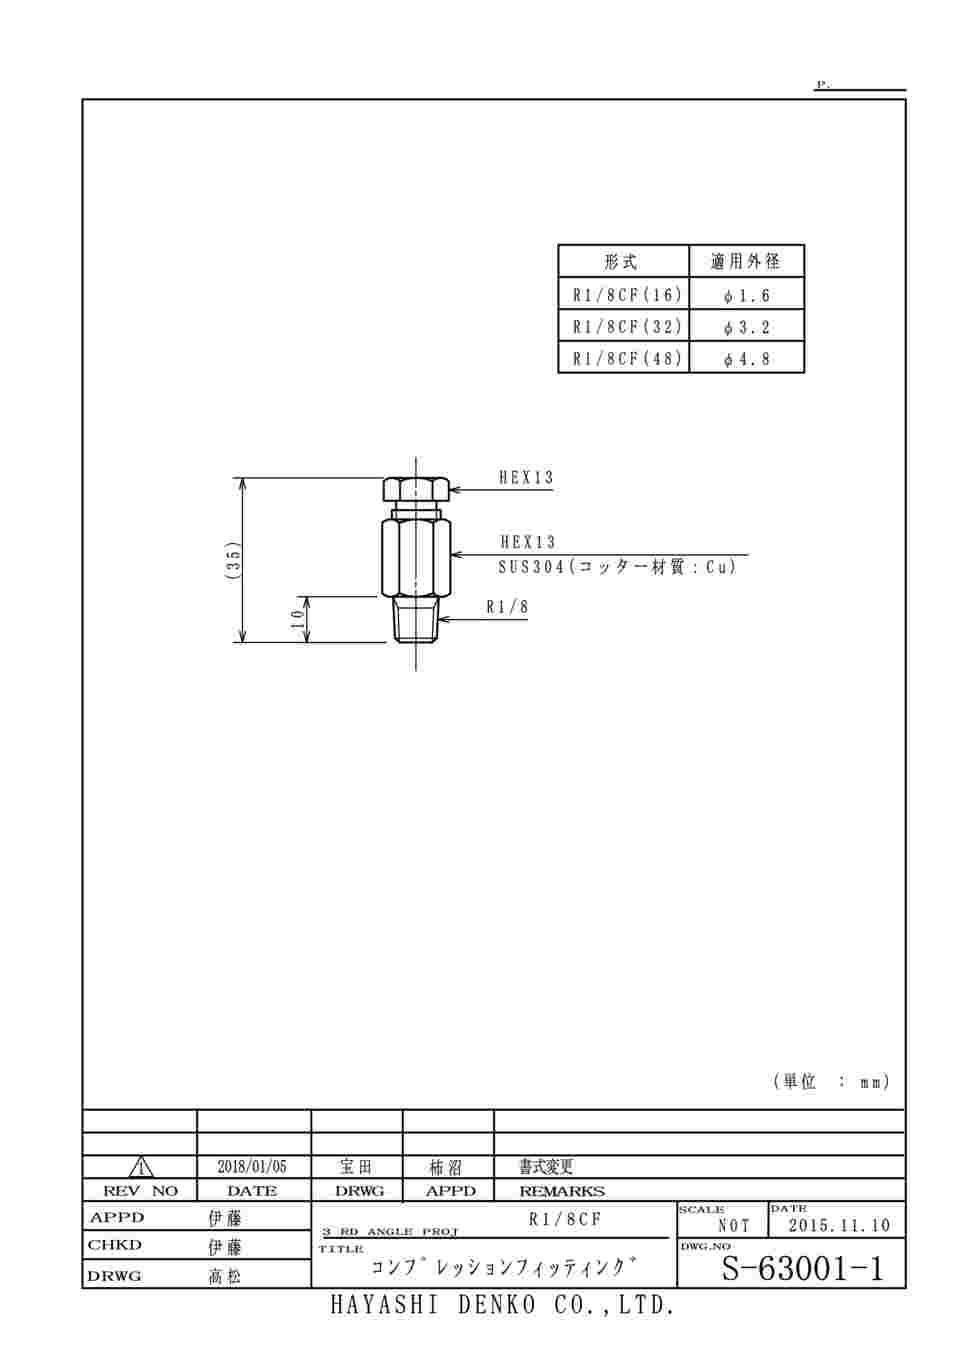 63-4209-13 コンプレッションフィッティング R1/8CF(48) 【AXEL】 アズワン